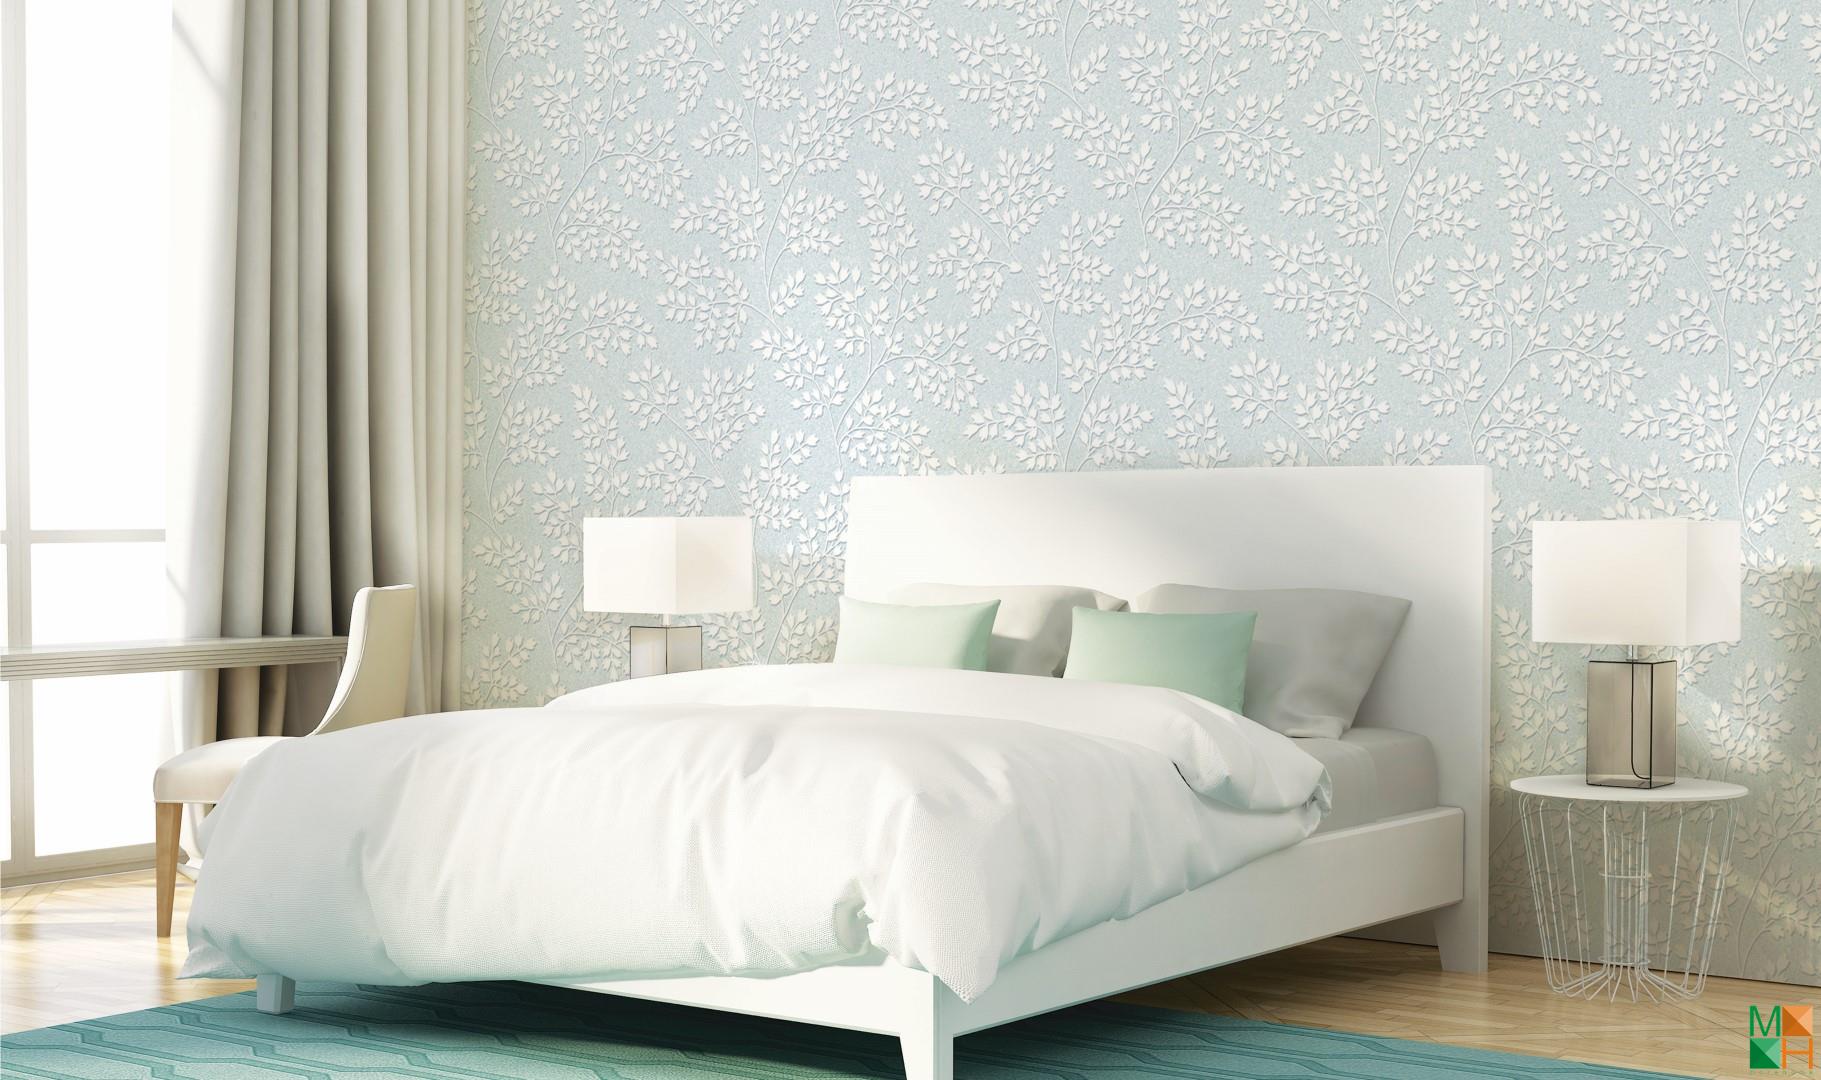 Việc sử dụng giấy dán tường cho phòng ngủ đem lại rất nhiều lợi ích như: làm sạch phòng, ít bám bụi bẩn, chống ẩm mốc 